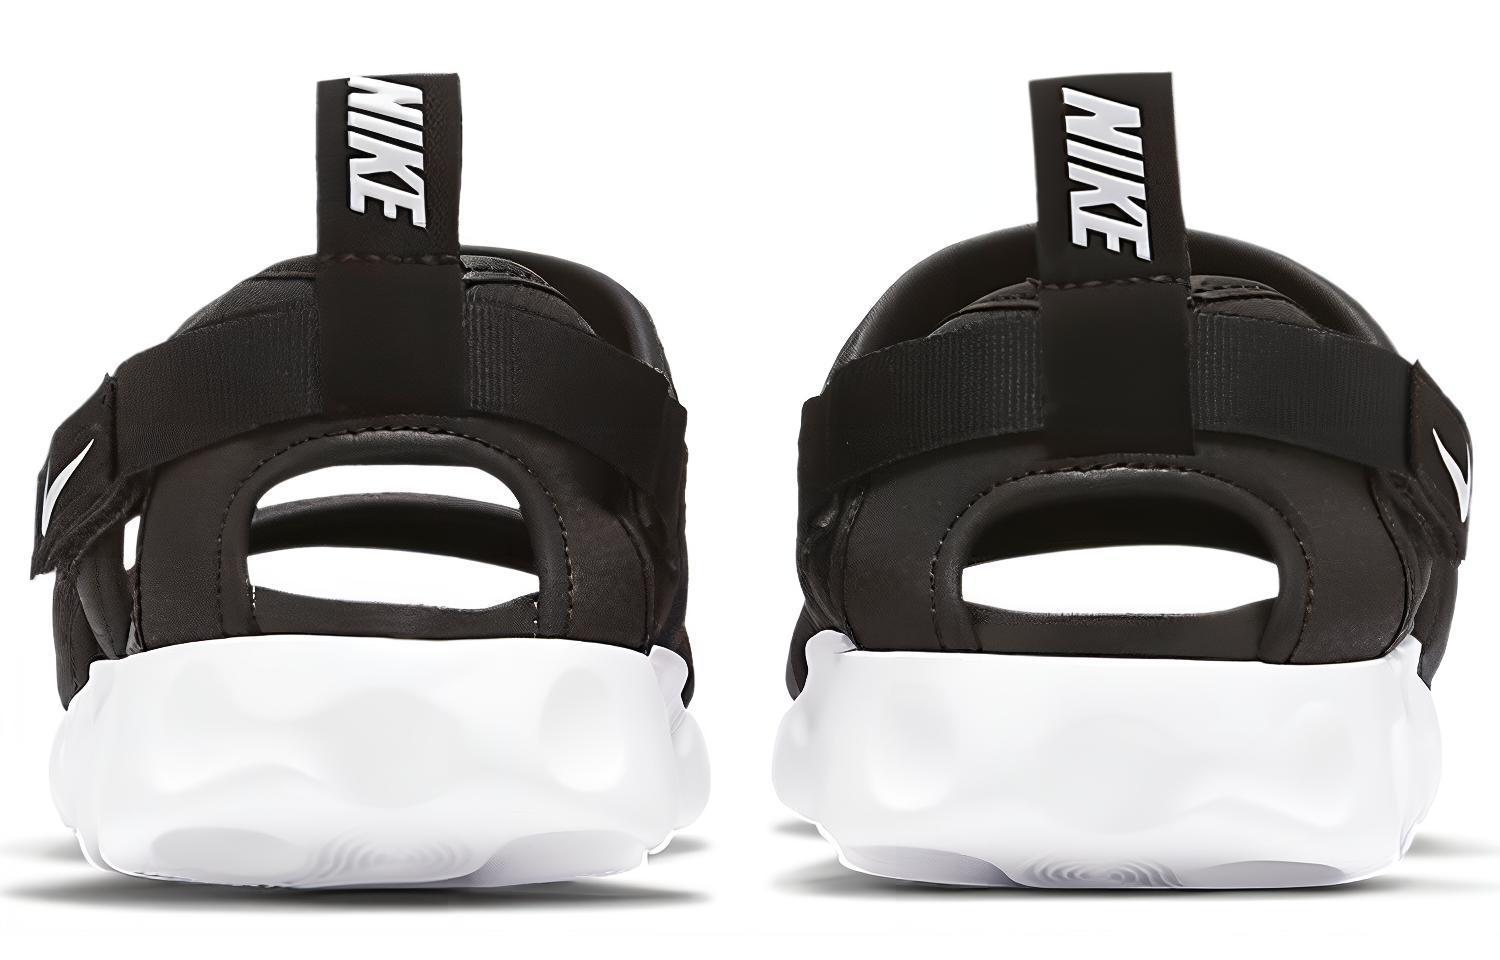 Nike Owaysis Sandal